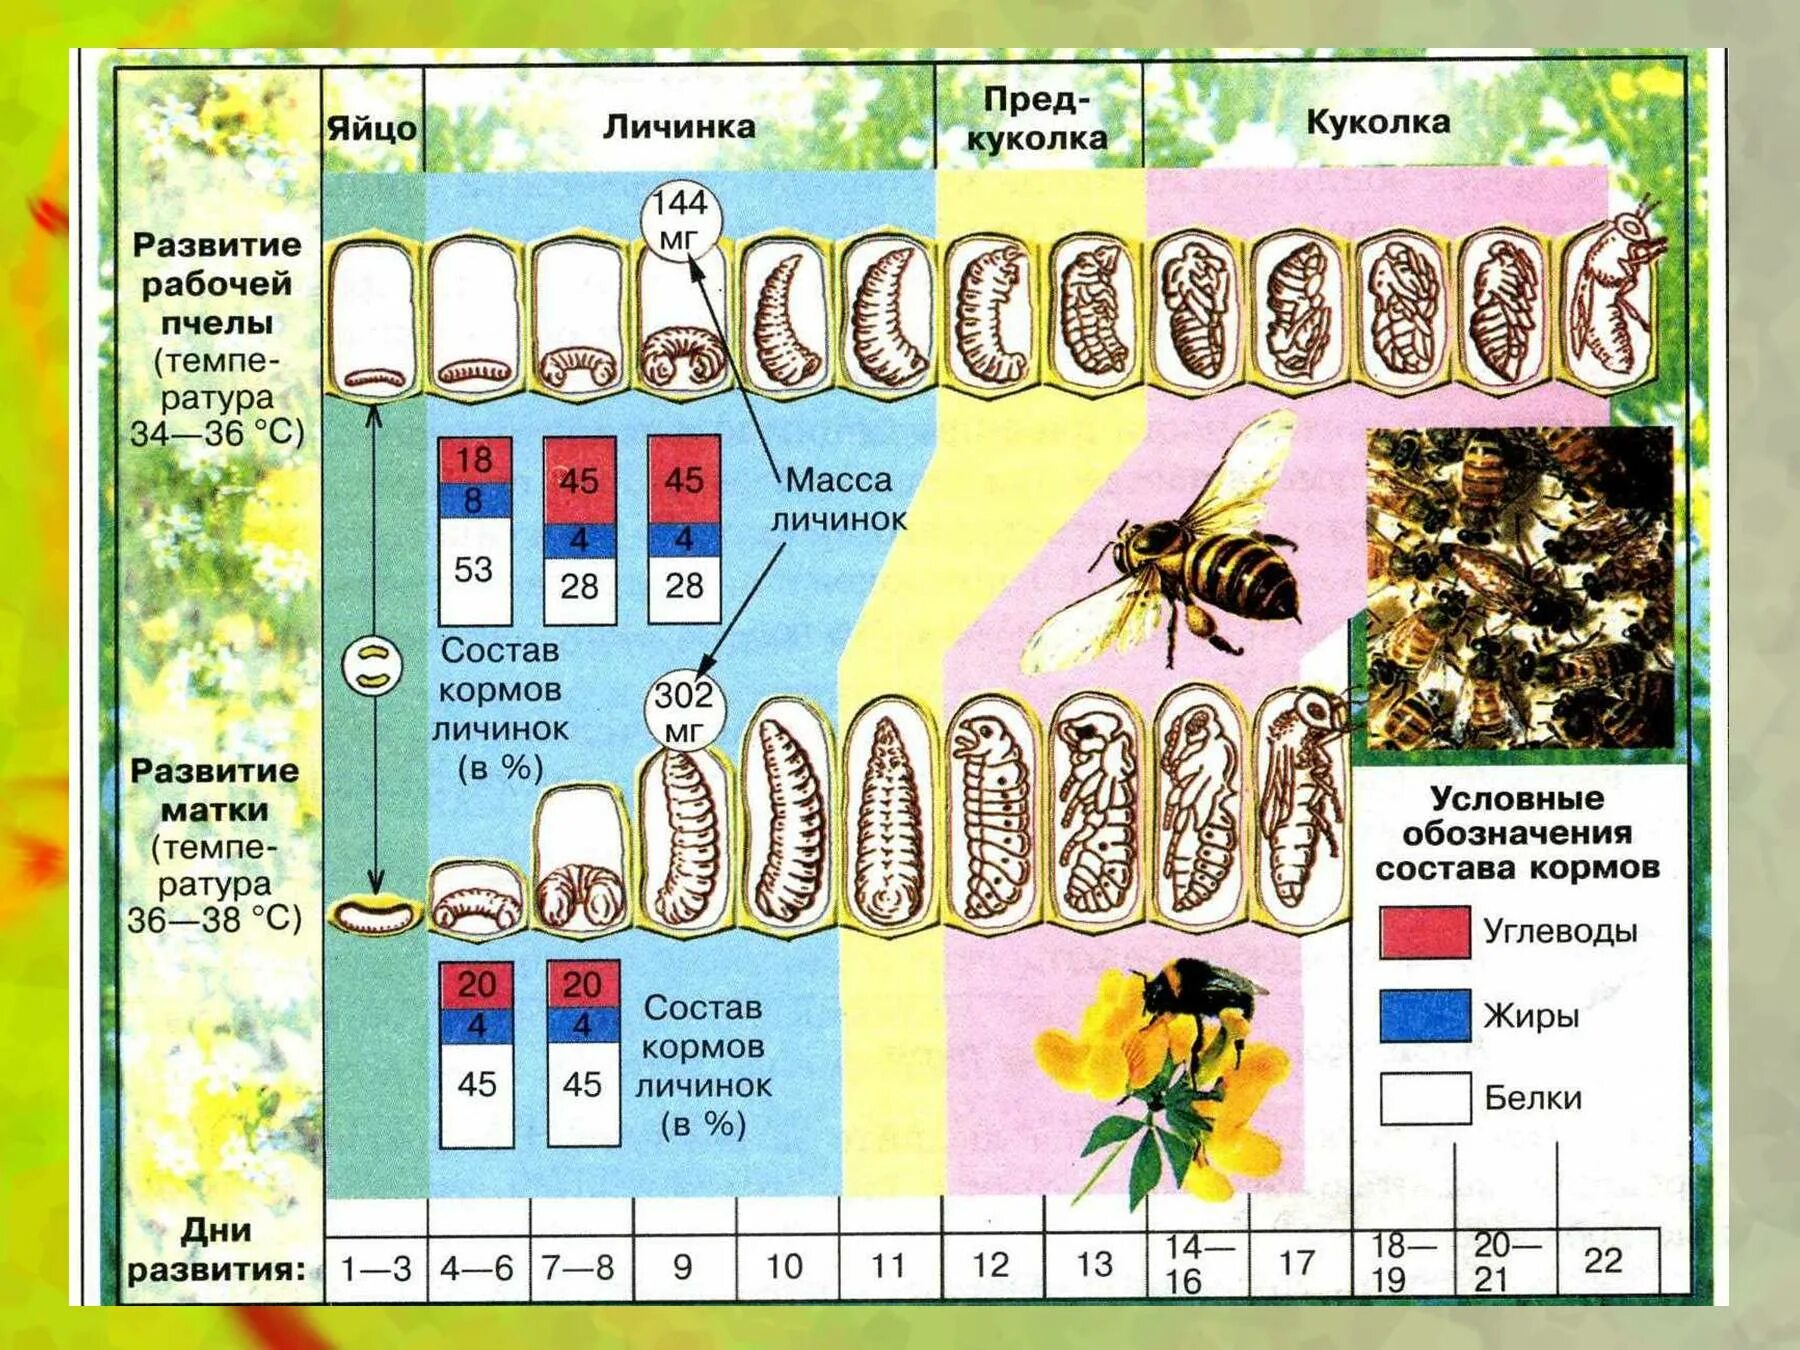 Сколько живет рабочая пчела. Жизненный цикл матки пчелы. Цикл развития матки пчелы. Фазы развития пчелиной матки. Стадия цикла развития пчелы.